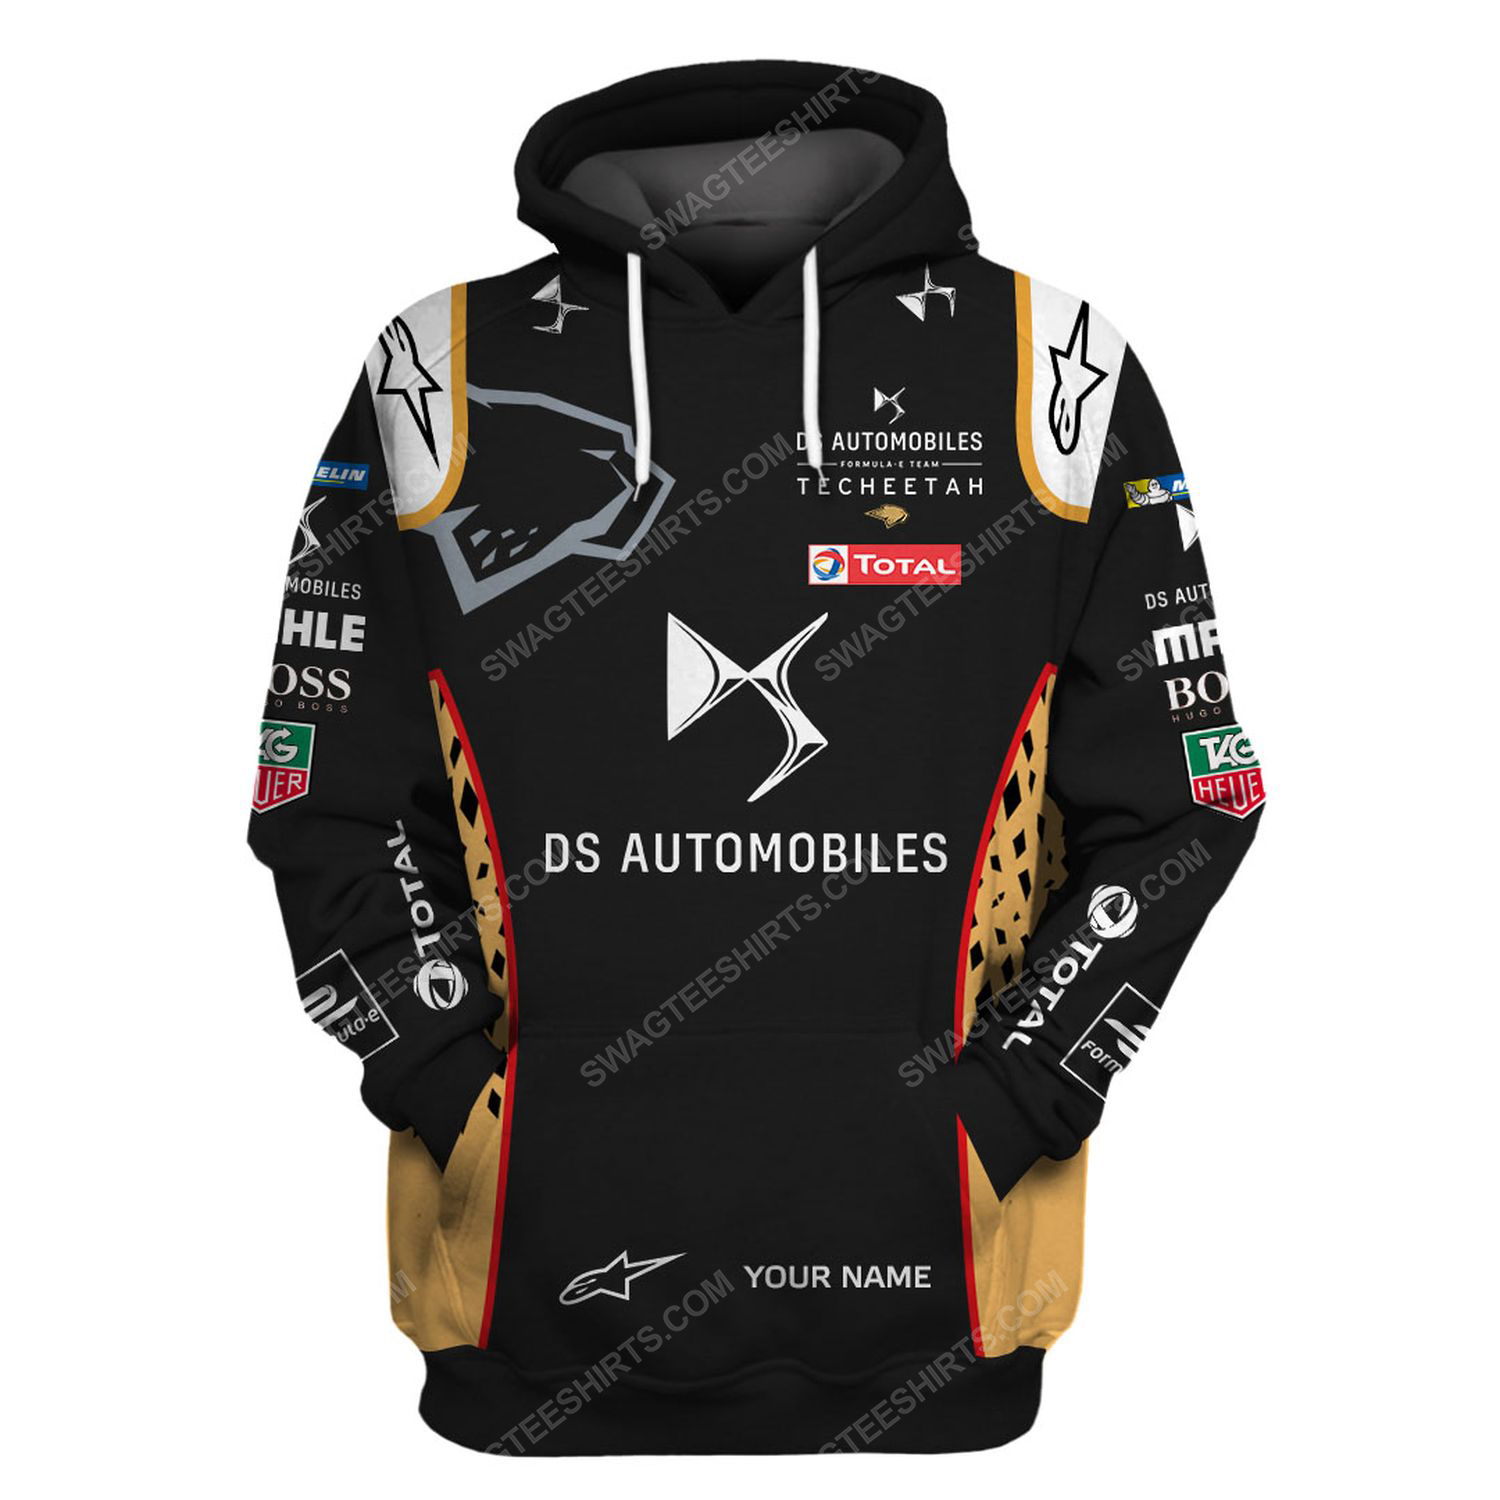 Custom ds automobiles racing team motorsport full printing hoodie